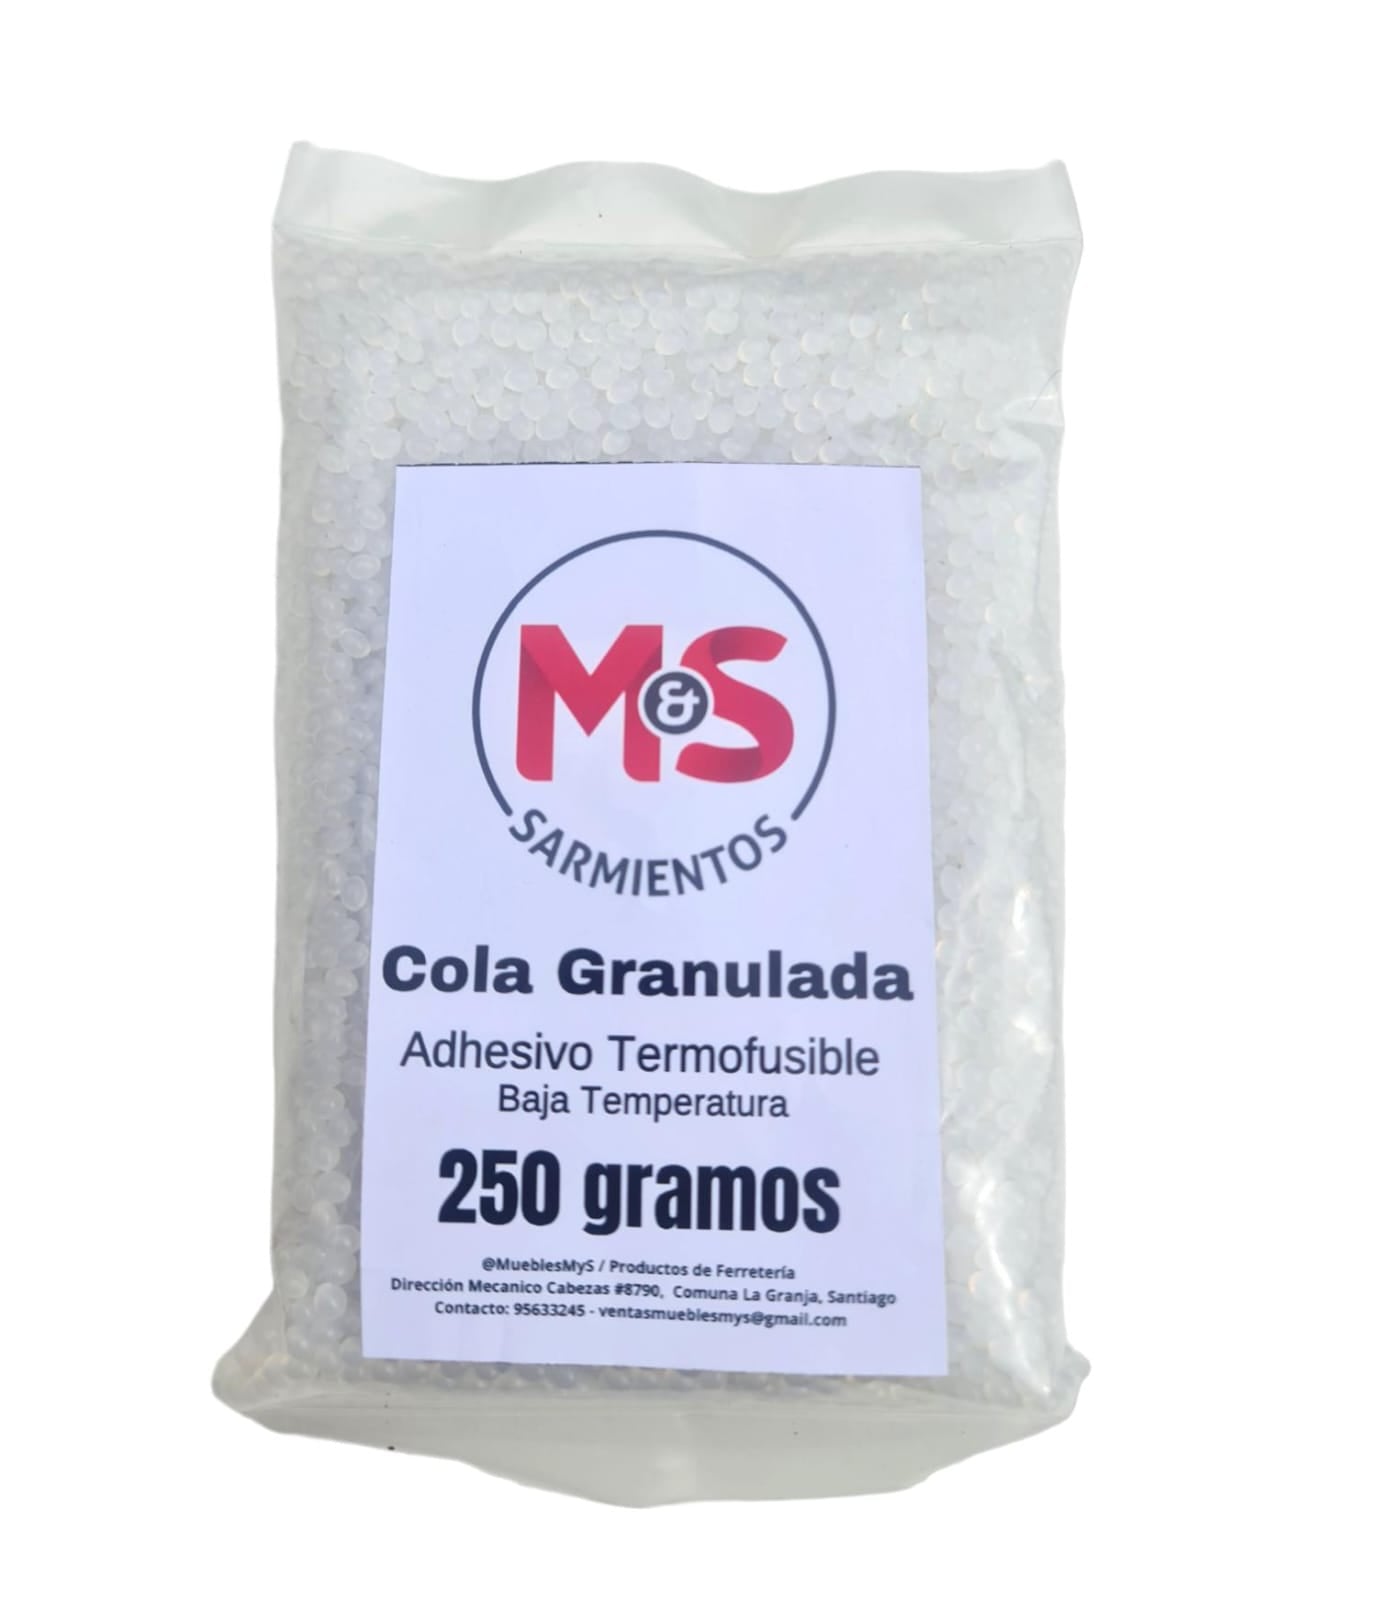 Cola Granulada, Adhesivo Termofusible, Bolsa 250 Gramos